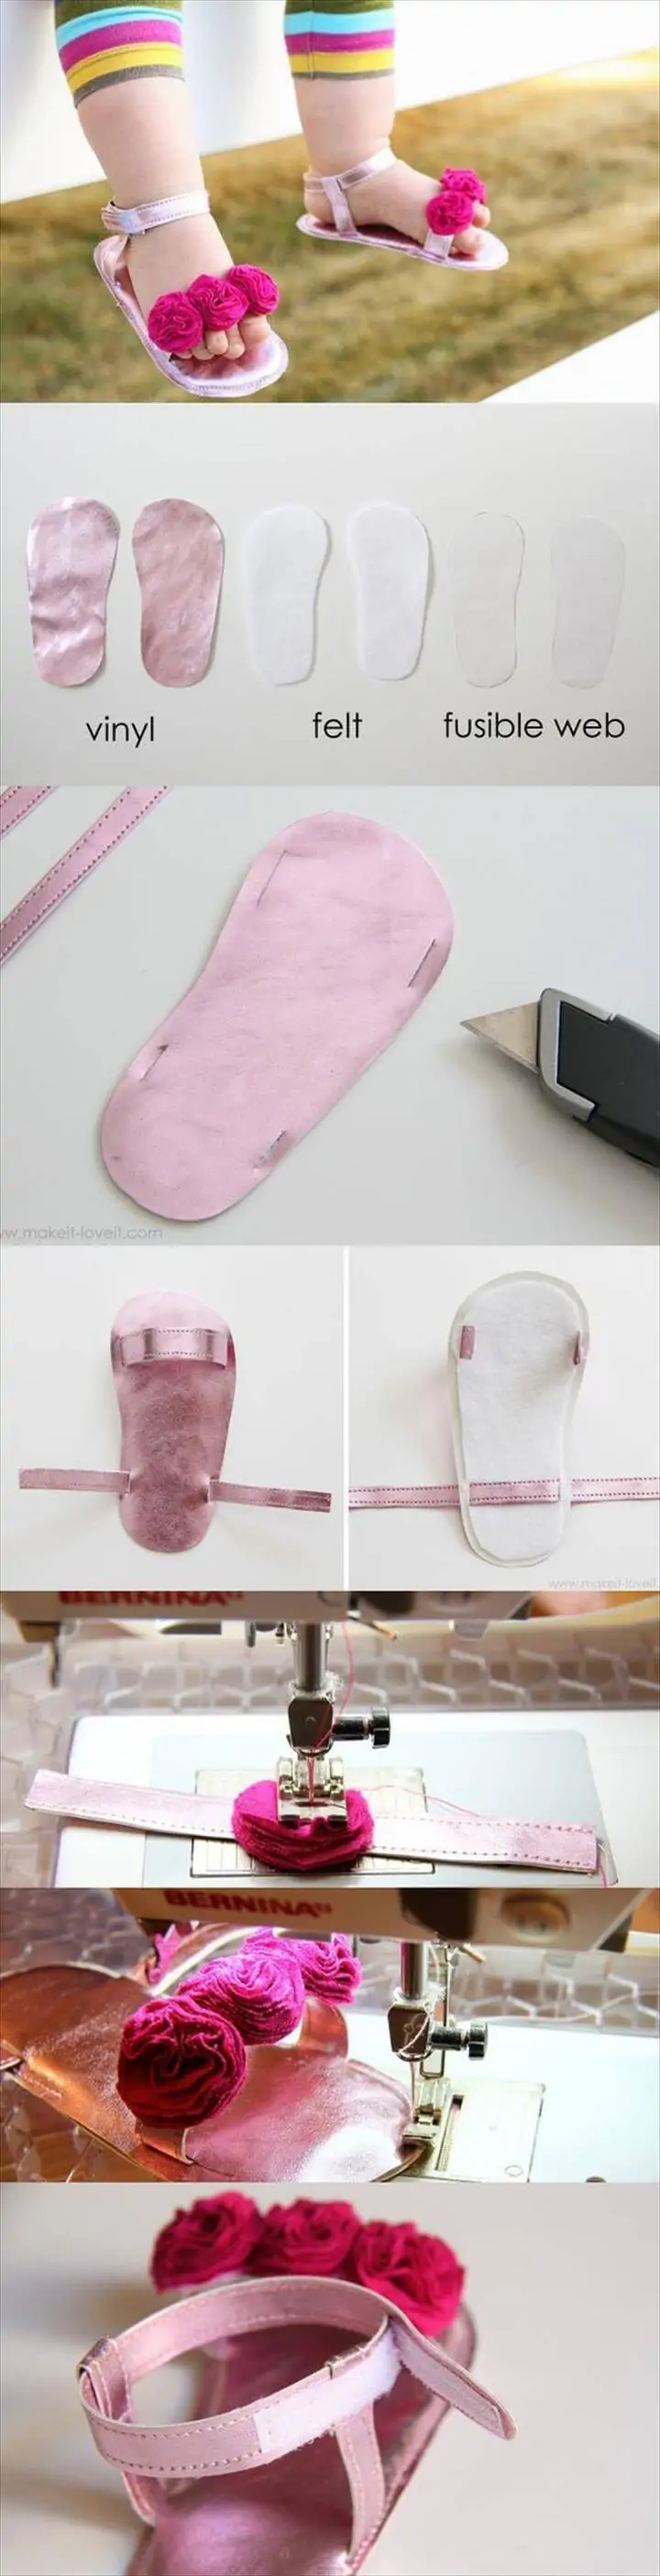 Proyecto de zapatos de bebé gratis de bricolaje